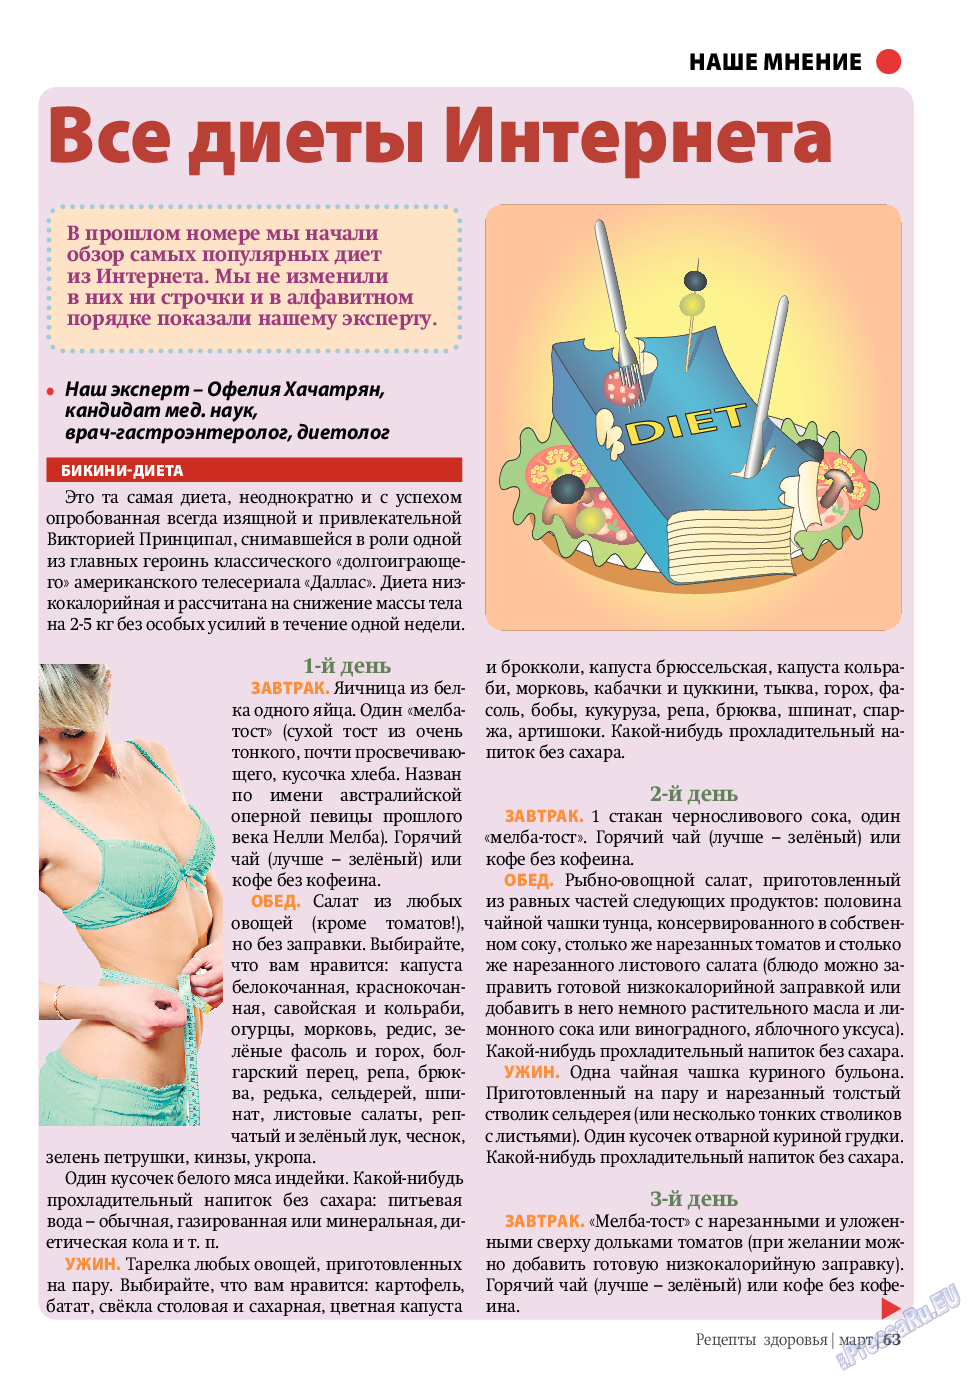 Рецепты здоровья, журнал. 2011 №3 стр.63